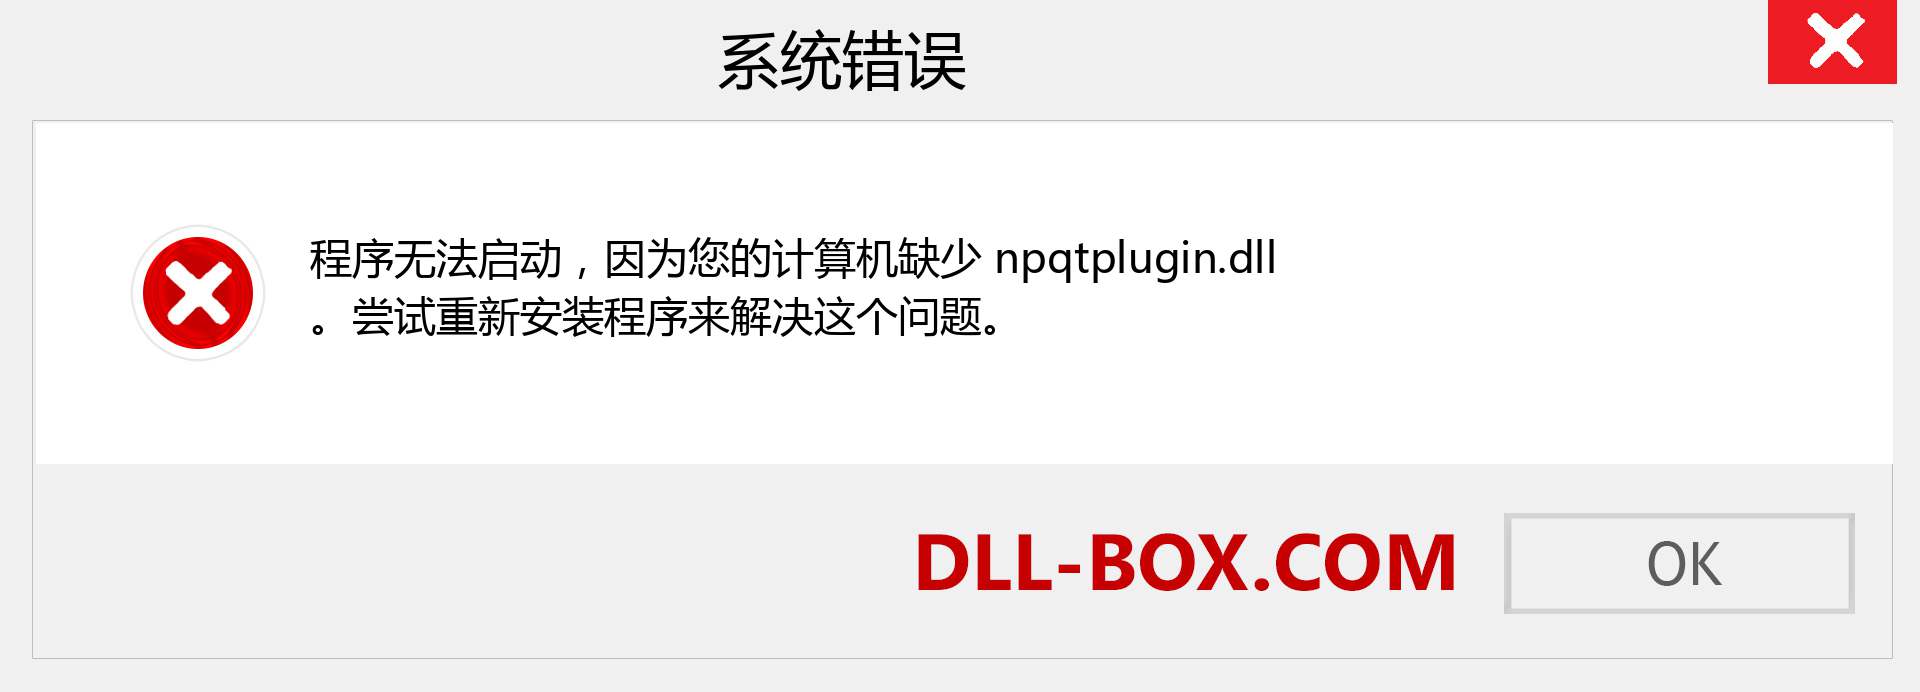 npqtplugin.dll 文件丢失？。 适用于 Windows 7、8、10 的下载 - 修复 Windows、照片、图像上的 npqtplugin dll 丢失错误